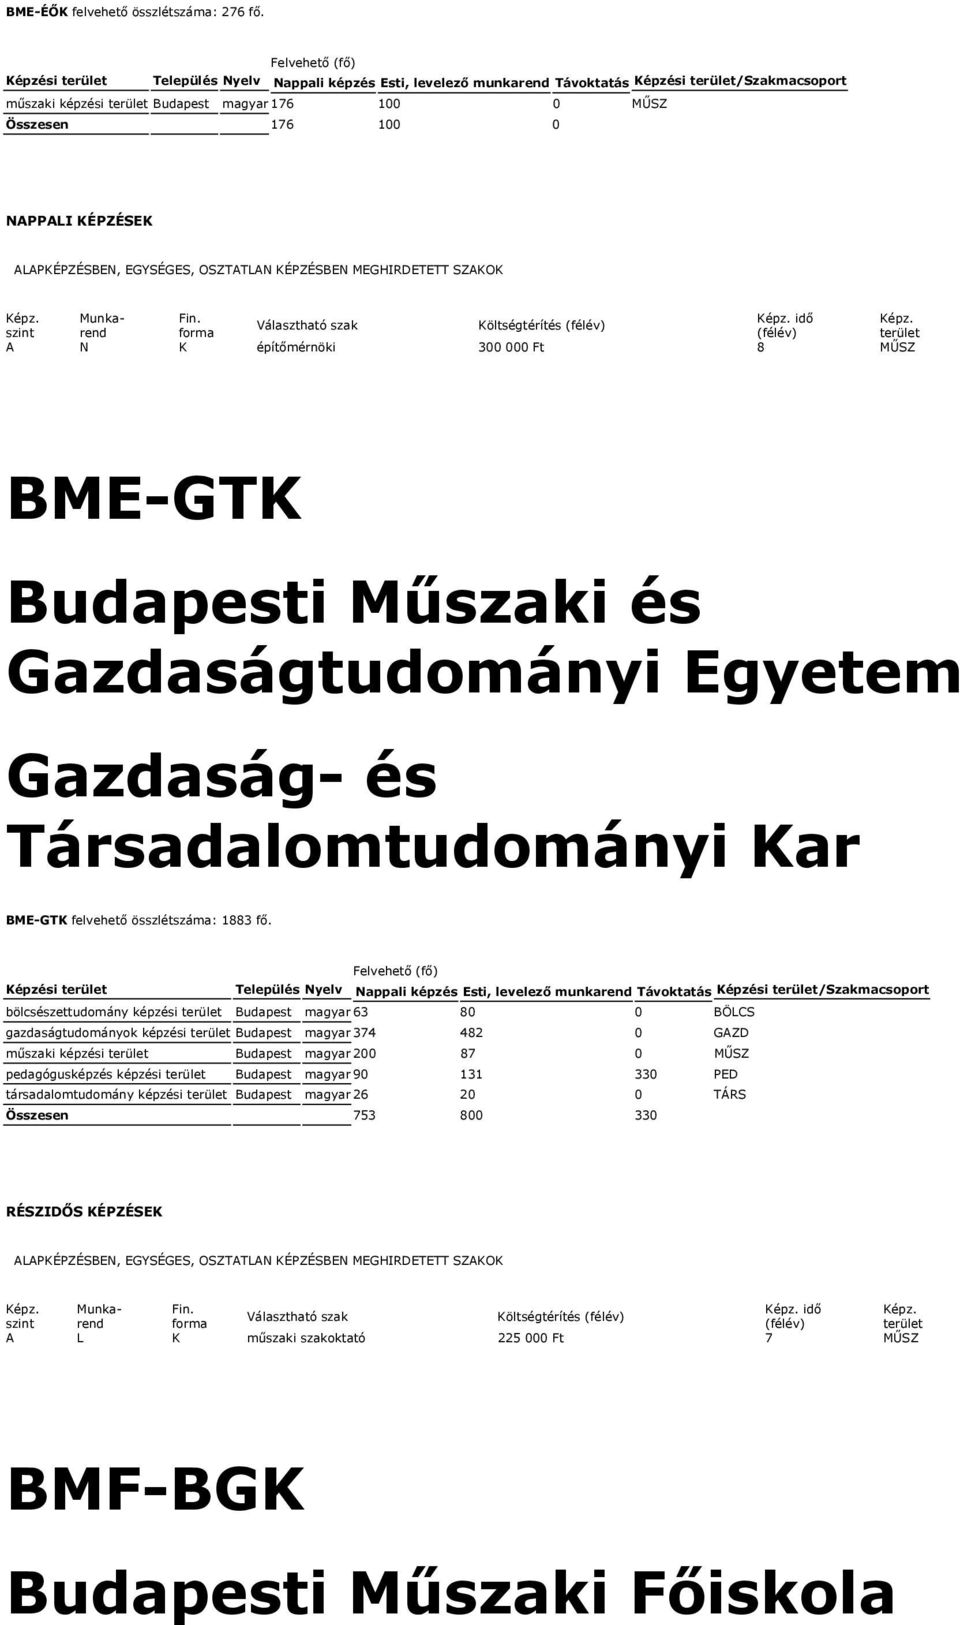 MŰSZ BME-GTK Budapesti Műszaki és Gazdaságtudományi Egyetem Gazdaság- és Társadalomtudományi Kar BME-GTK felvehető összlétszáma: 1883 fő.